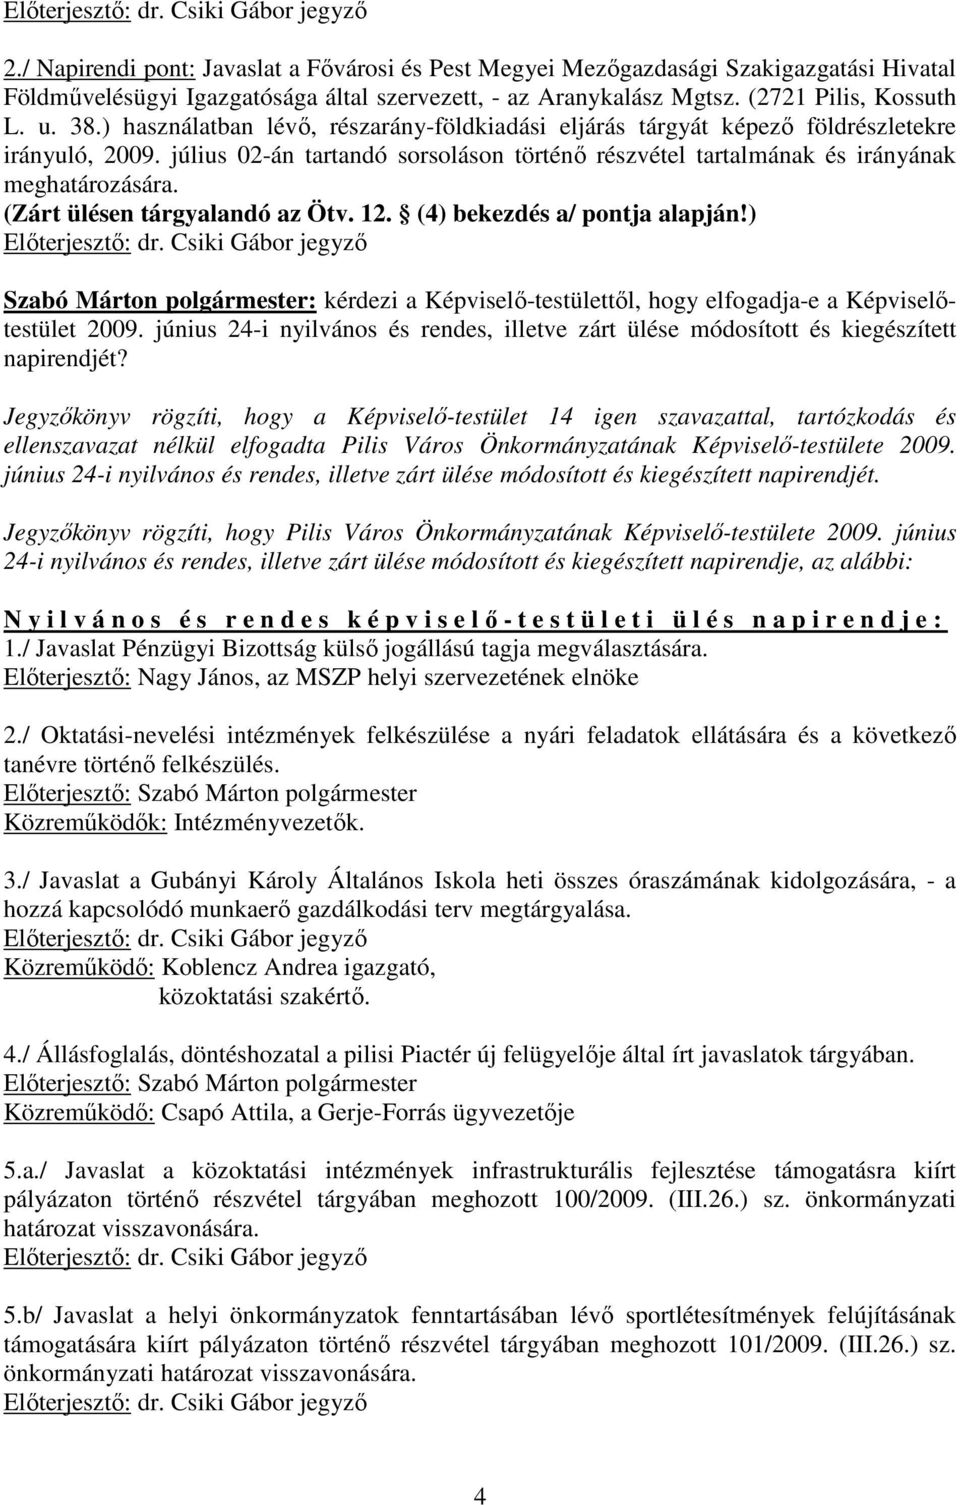 (Zárt ülésen tárgyalandó az Ötv. 12. (4) bekezdés a/ pontja alapján!) Szabó Márton polgármester: kérdezi a Képviselı-testülettıl, hogy elfogadja-e a Képviselıtestület 2009.